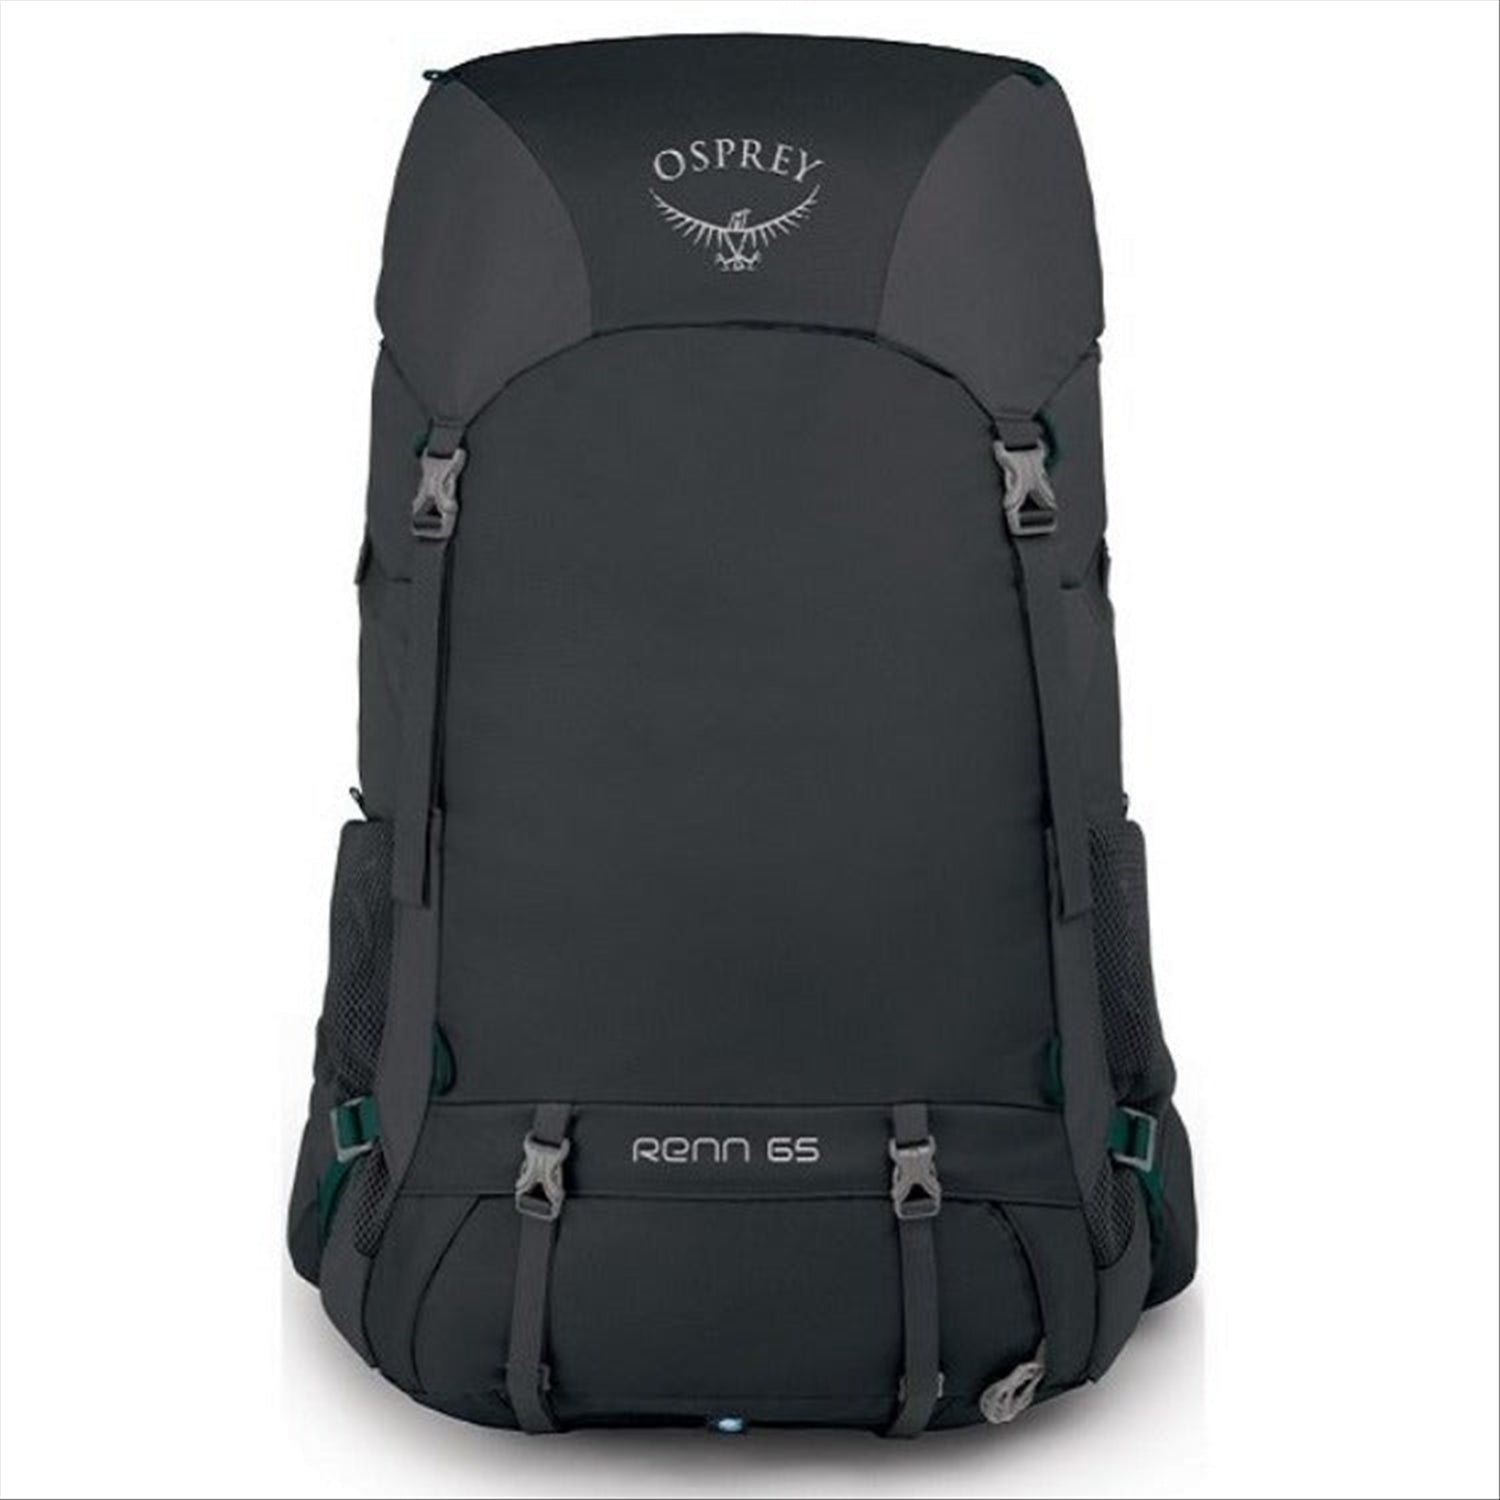 Osprey Osprey Renn 65 Women's Backpack